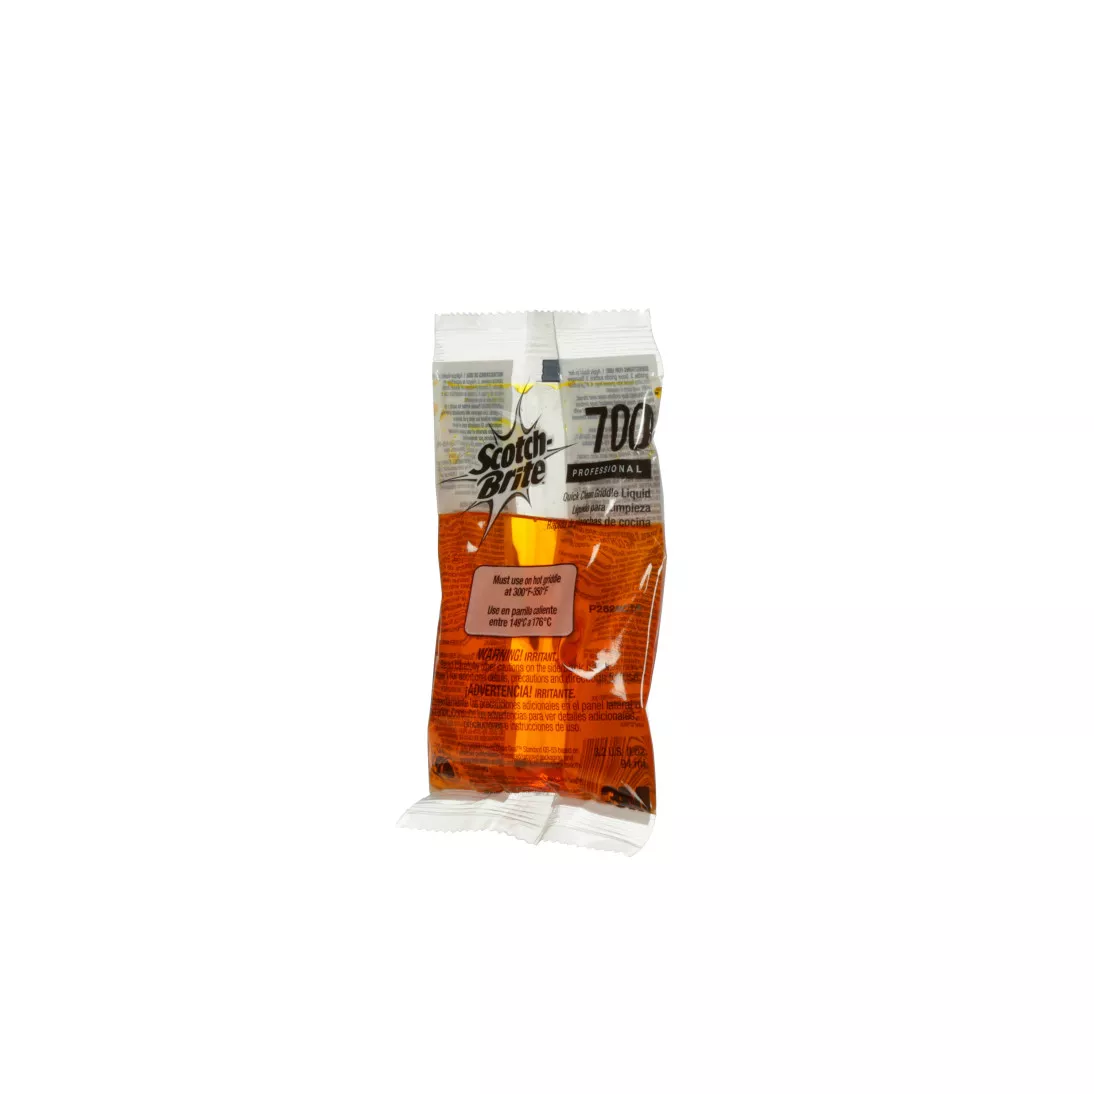 Scotch-Brite™ Quick Clean Griddle Liquid 700-40CC, 3.2 oz, 10/Box, 4
Boxes/Case